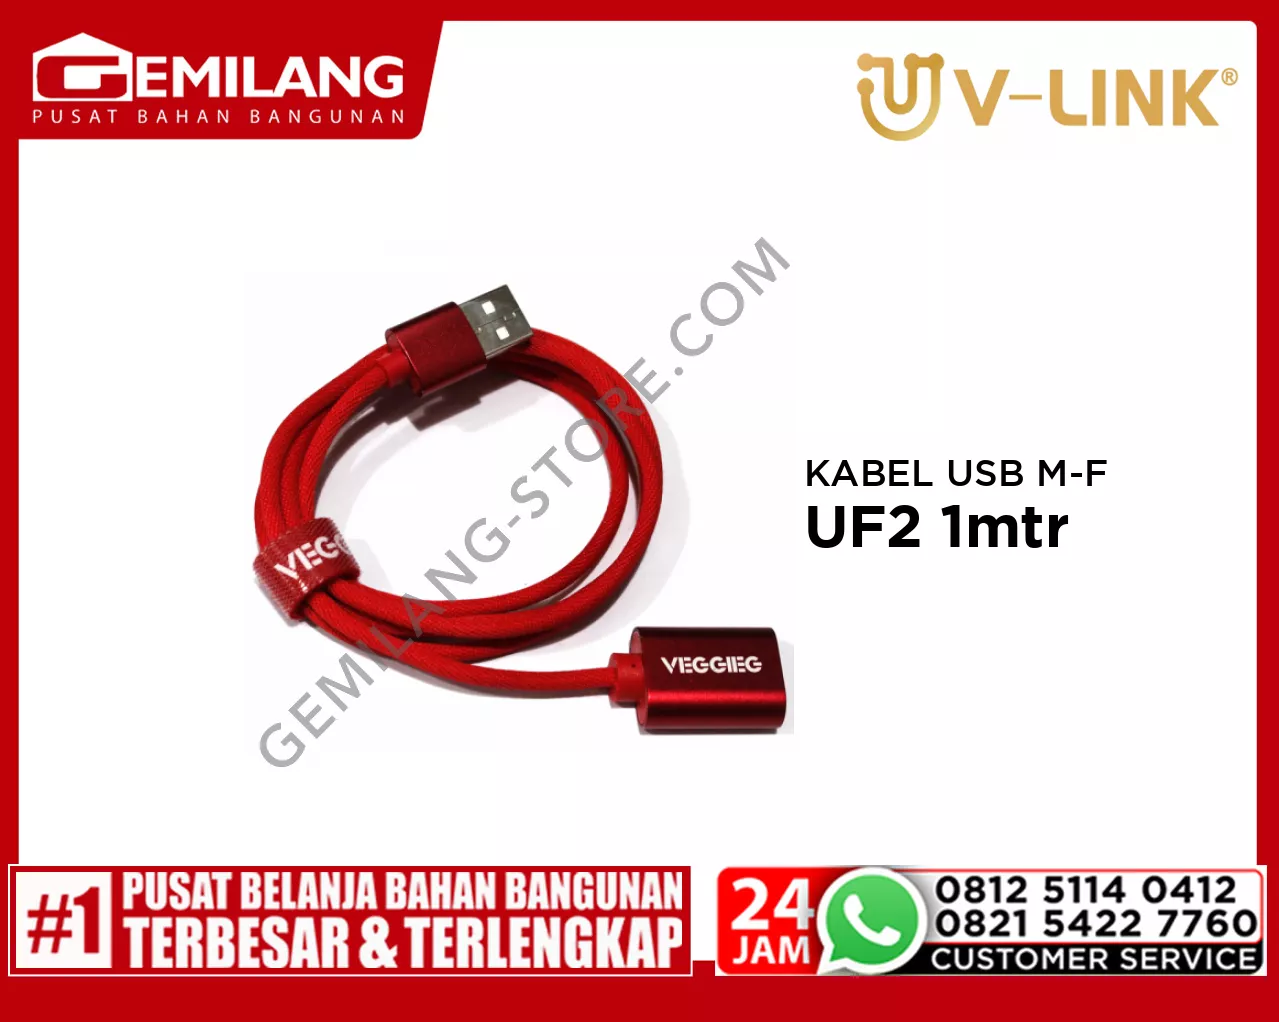 V-LINK KABEL USB MALE TO FEMALE VEGGIEG UF2 1mtr